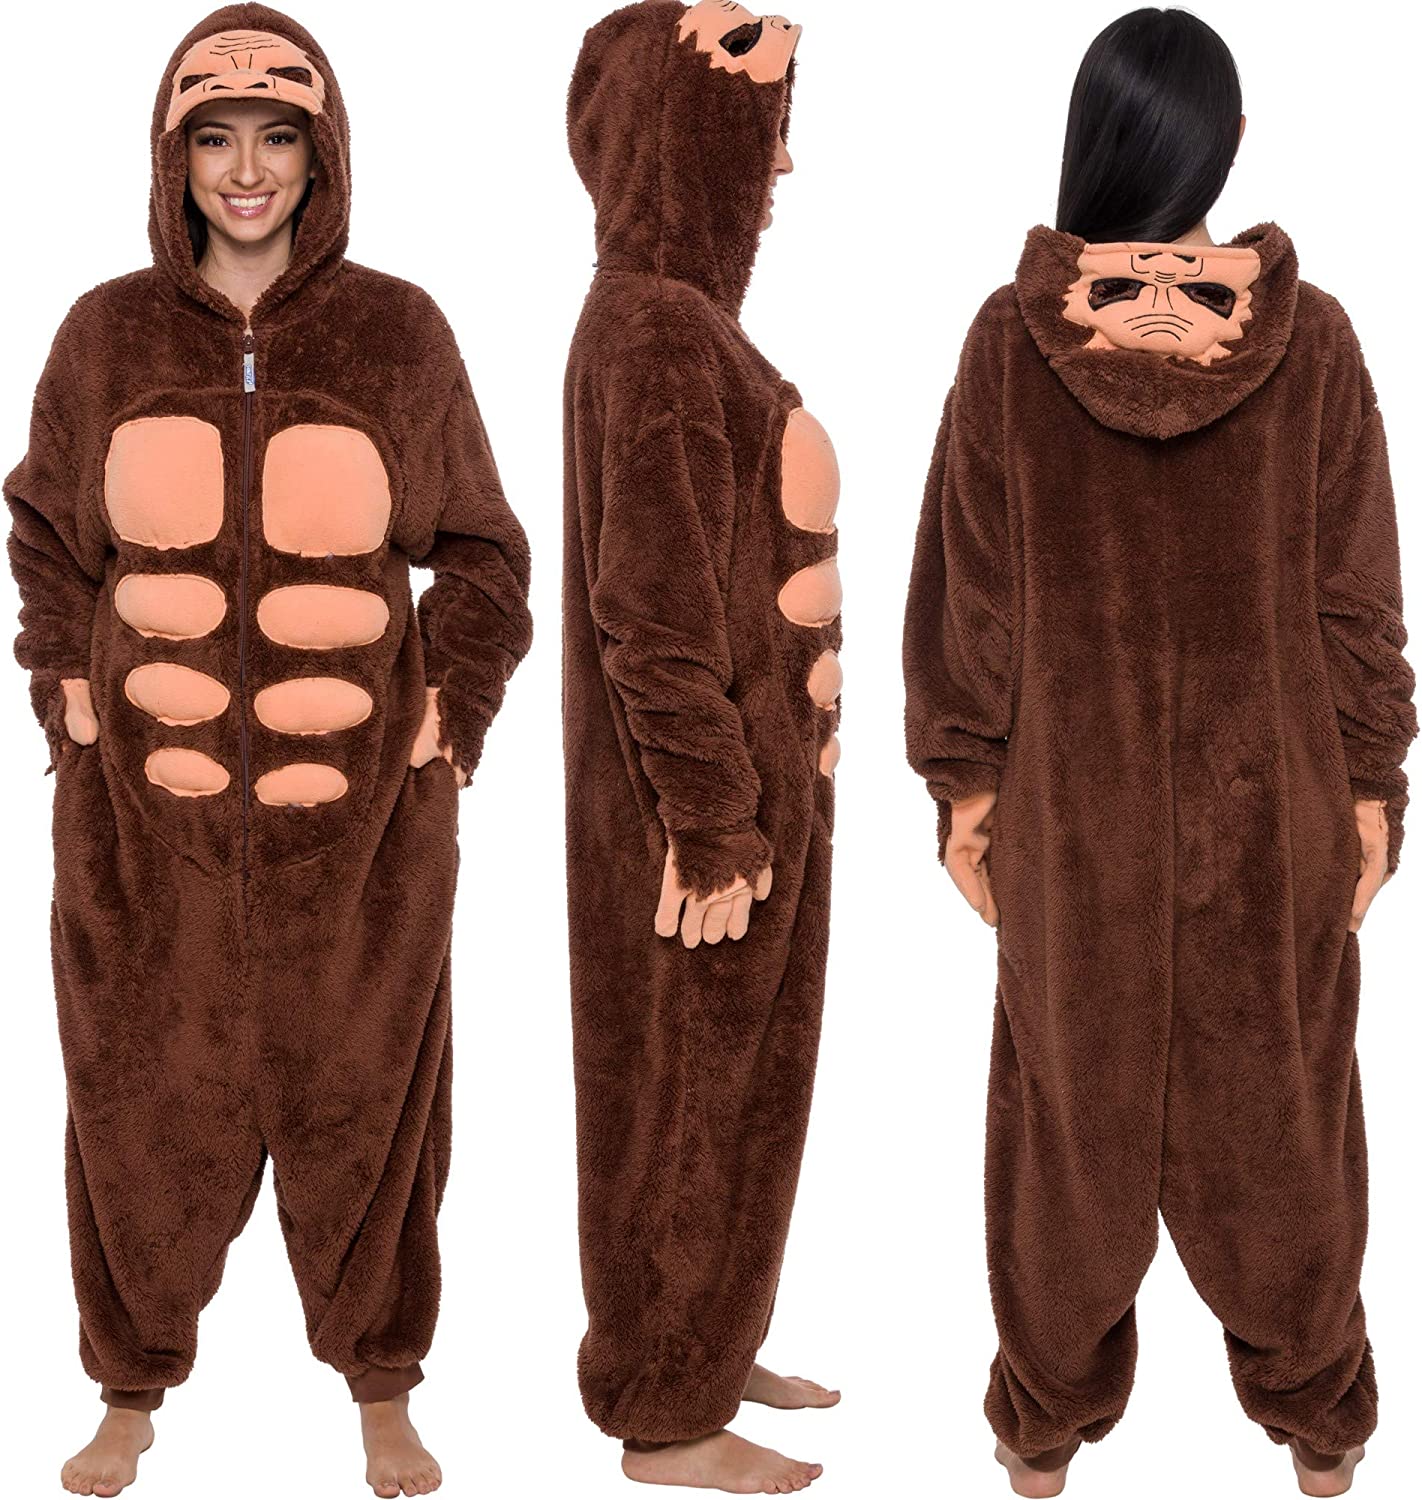 Sasquatch Yeti One Piece Costume Cosplay Animal Pajamas